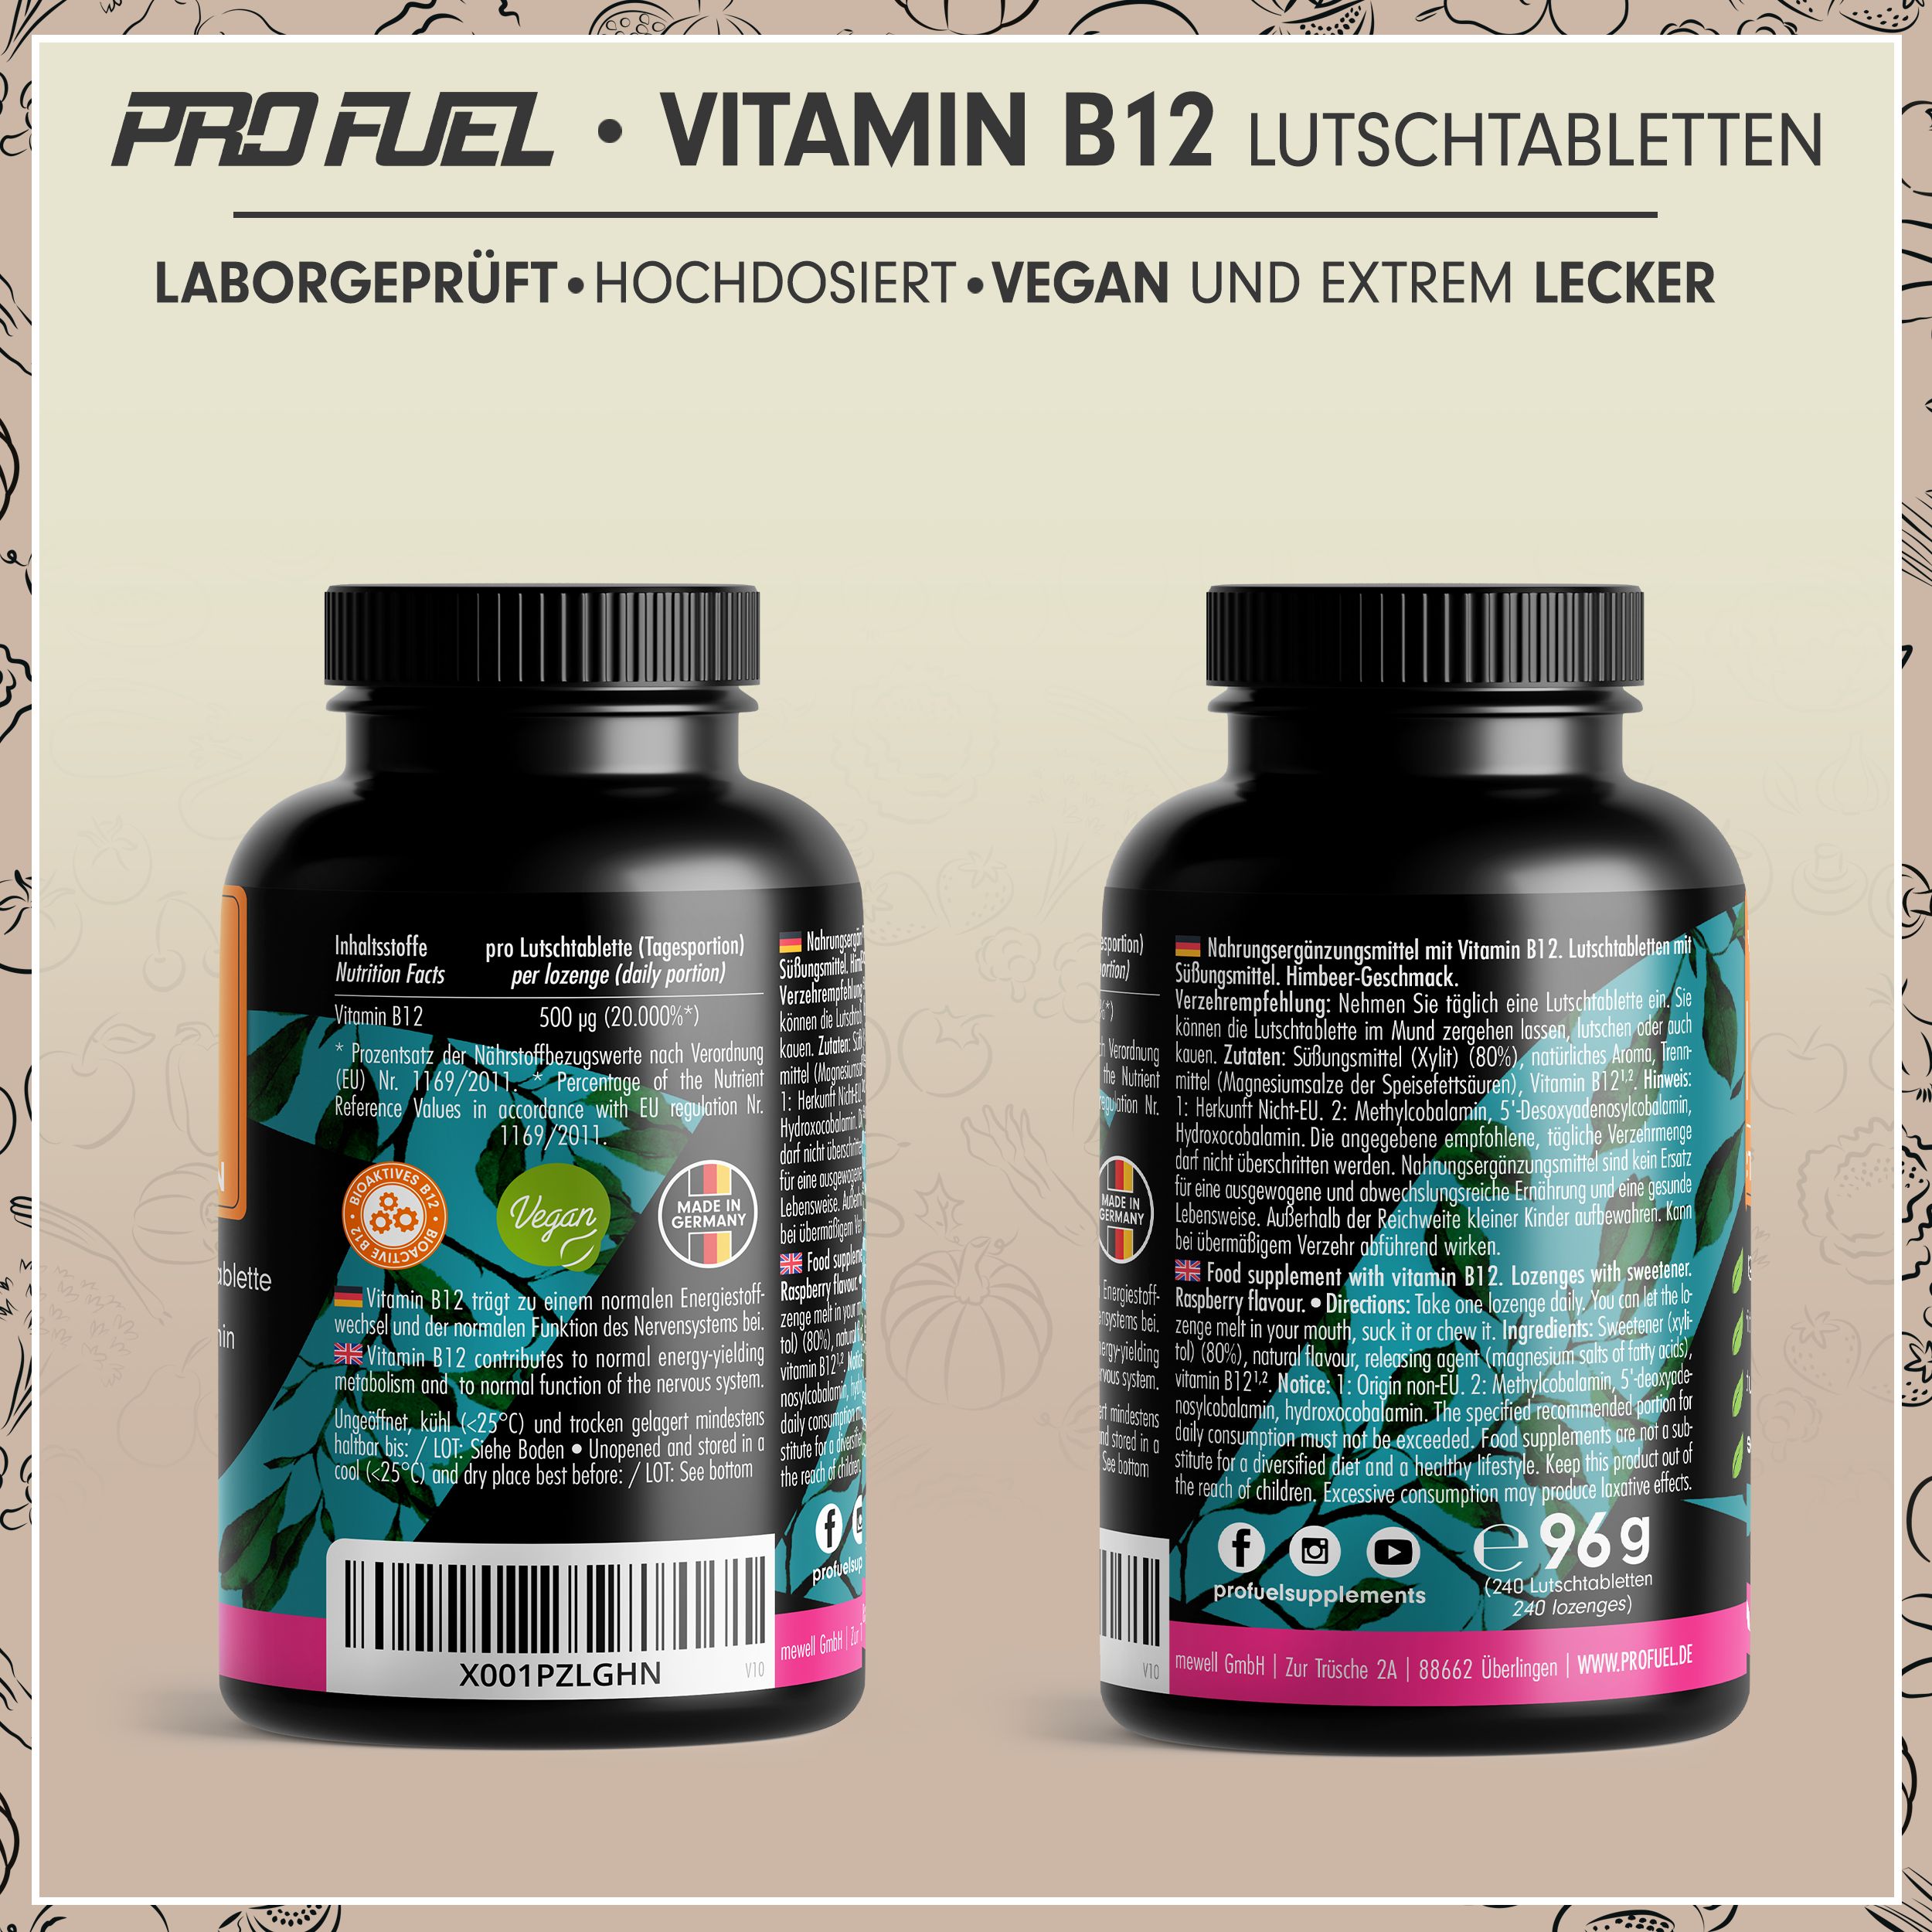 ProFuel - VITAMIN B12 Lutschtabletten